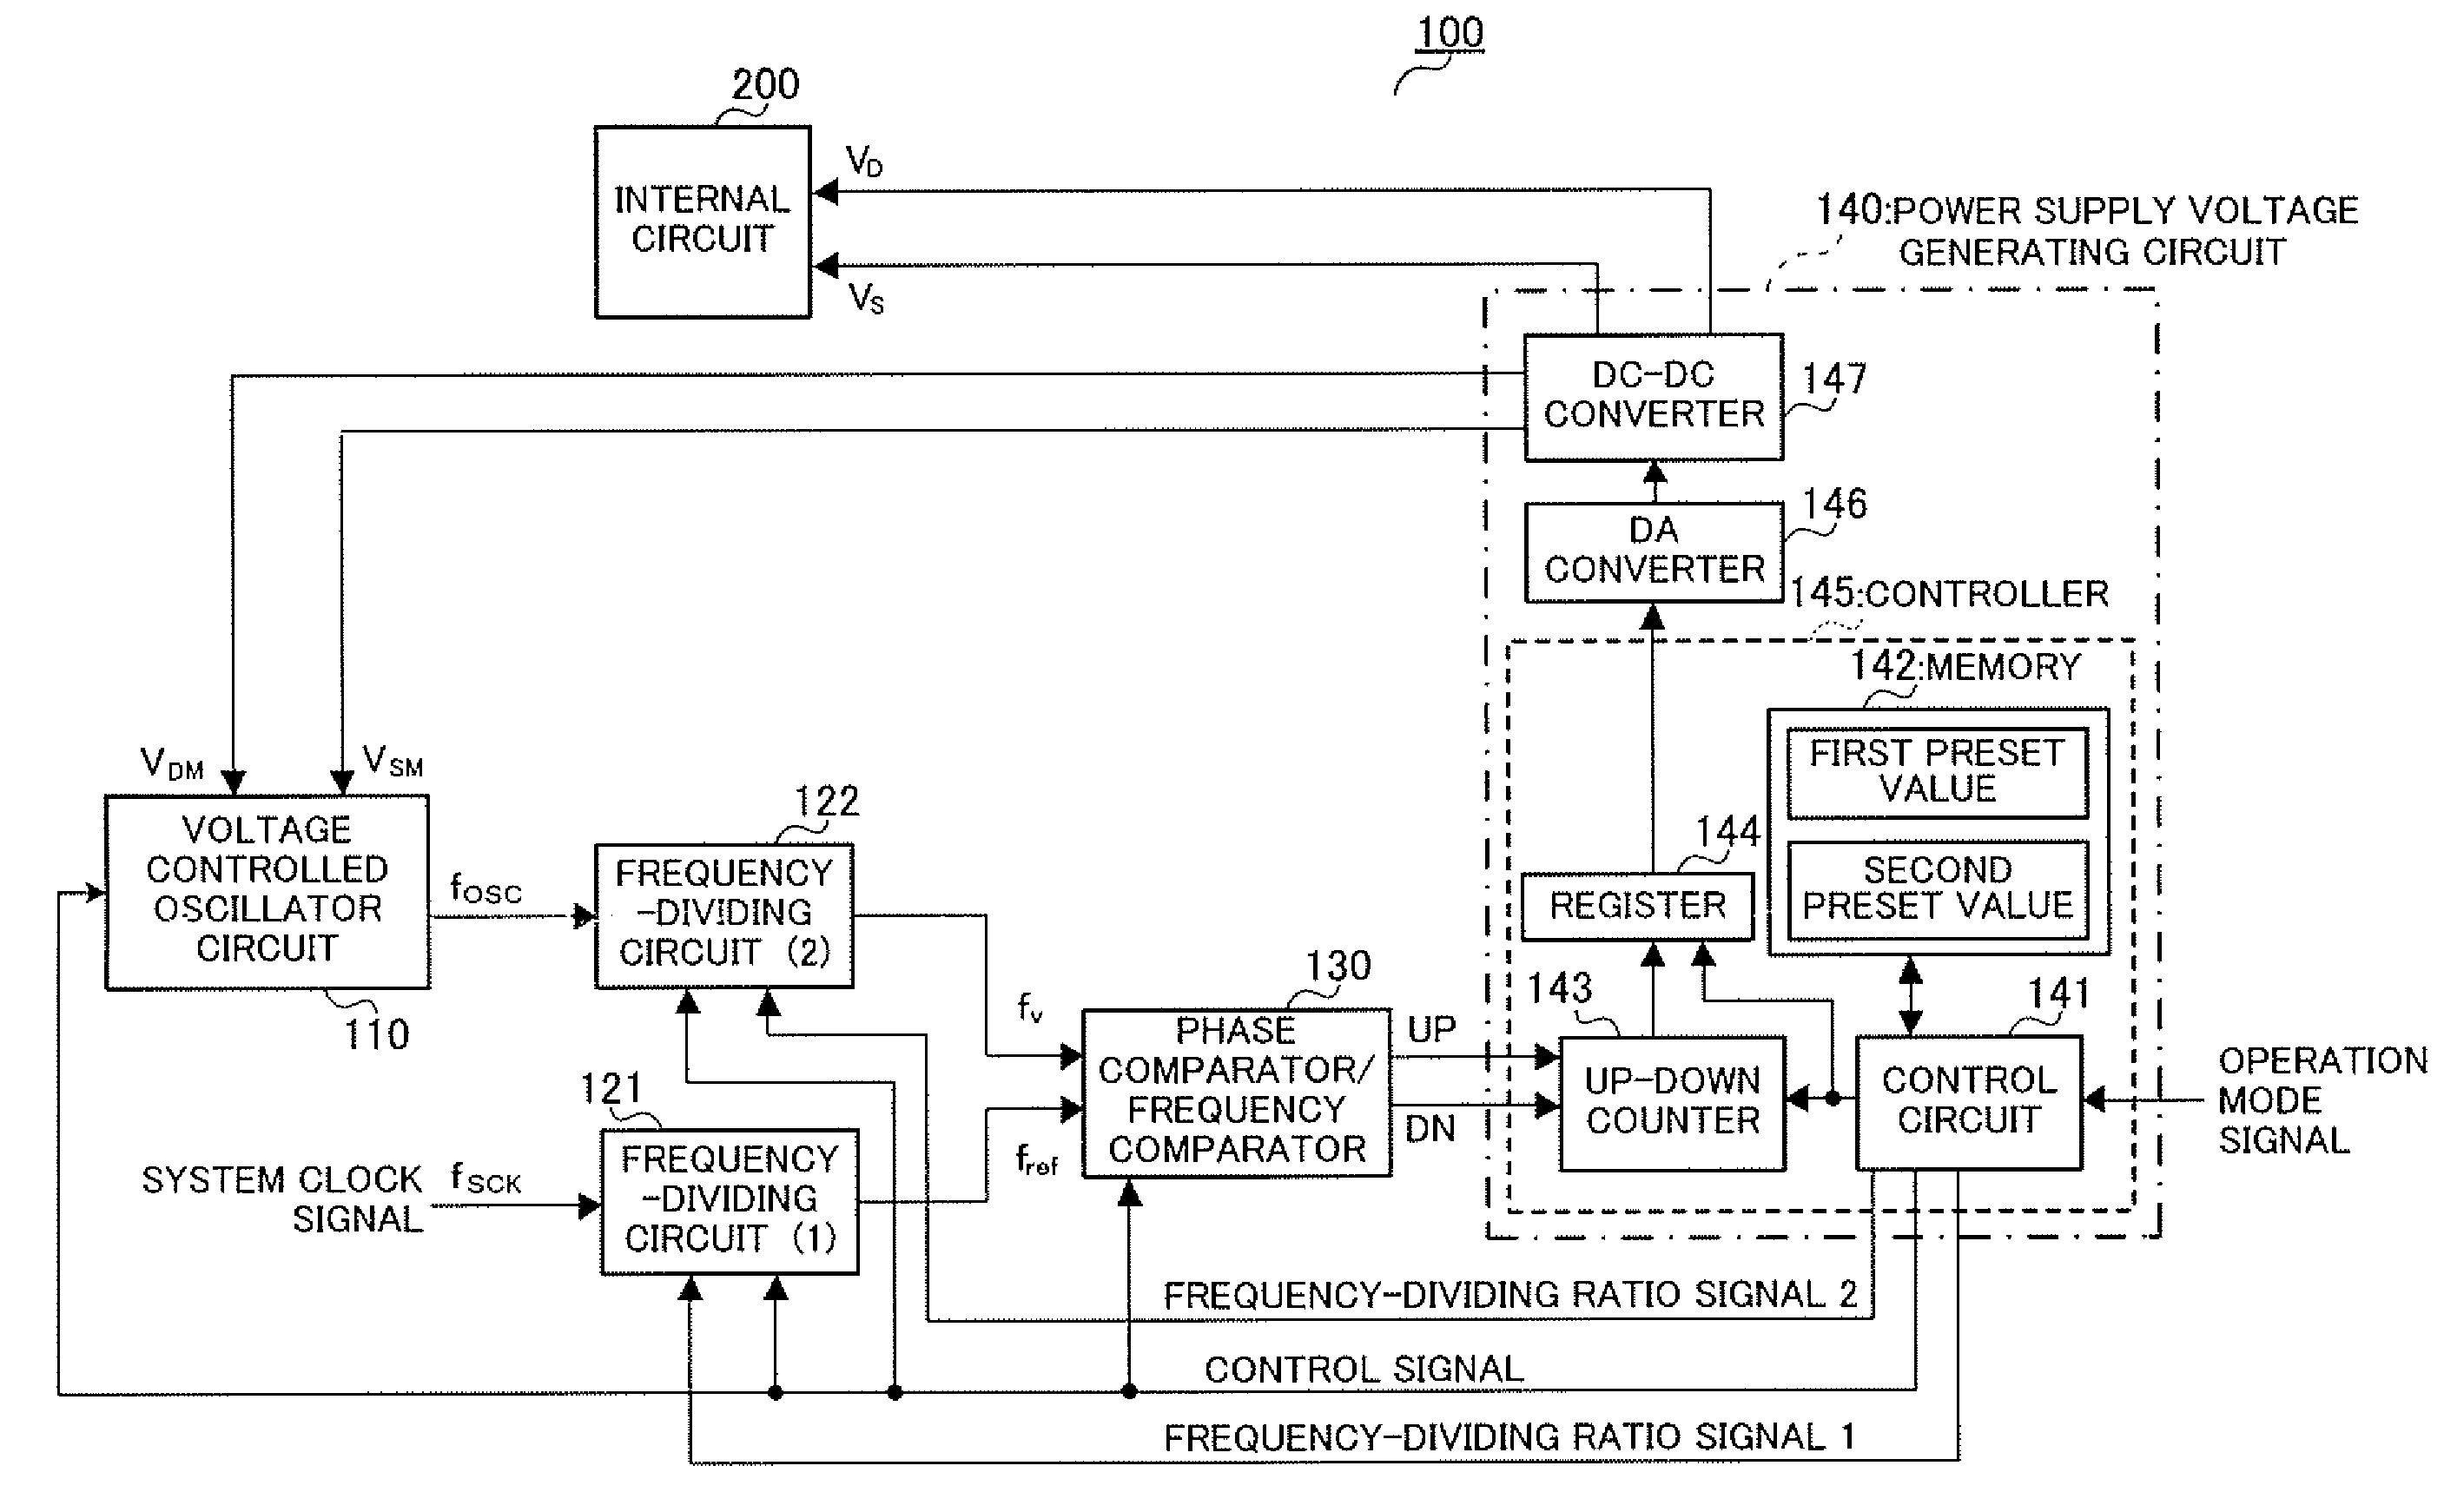 Power supply voltage control apparatus